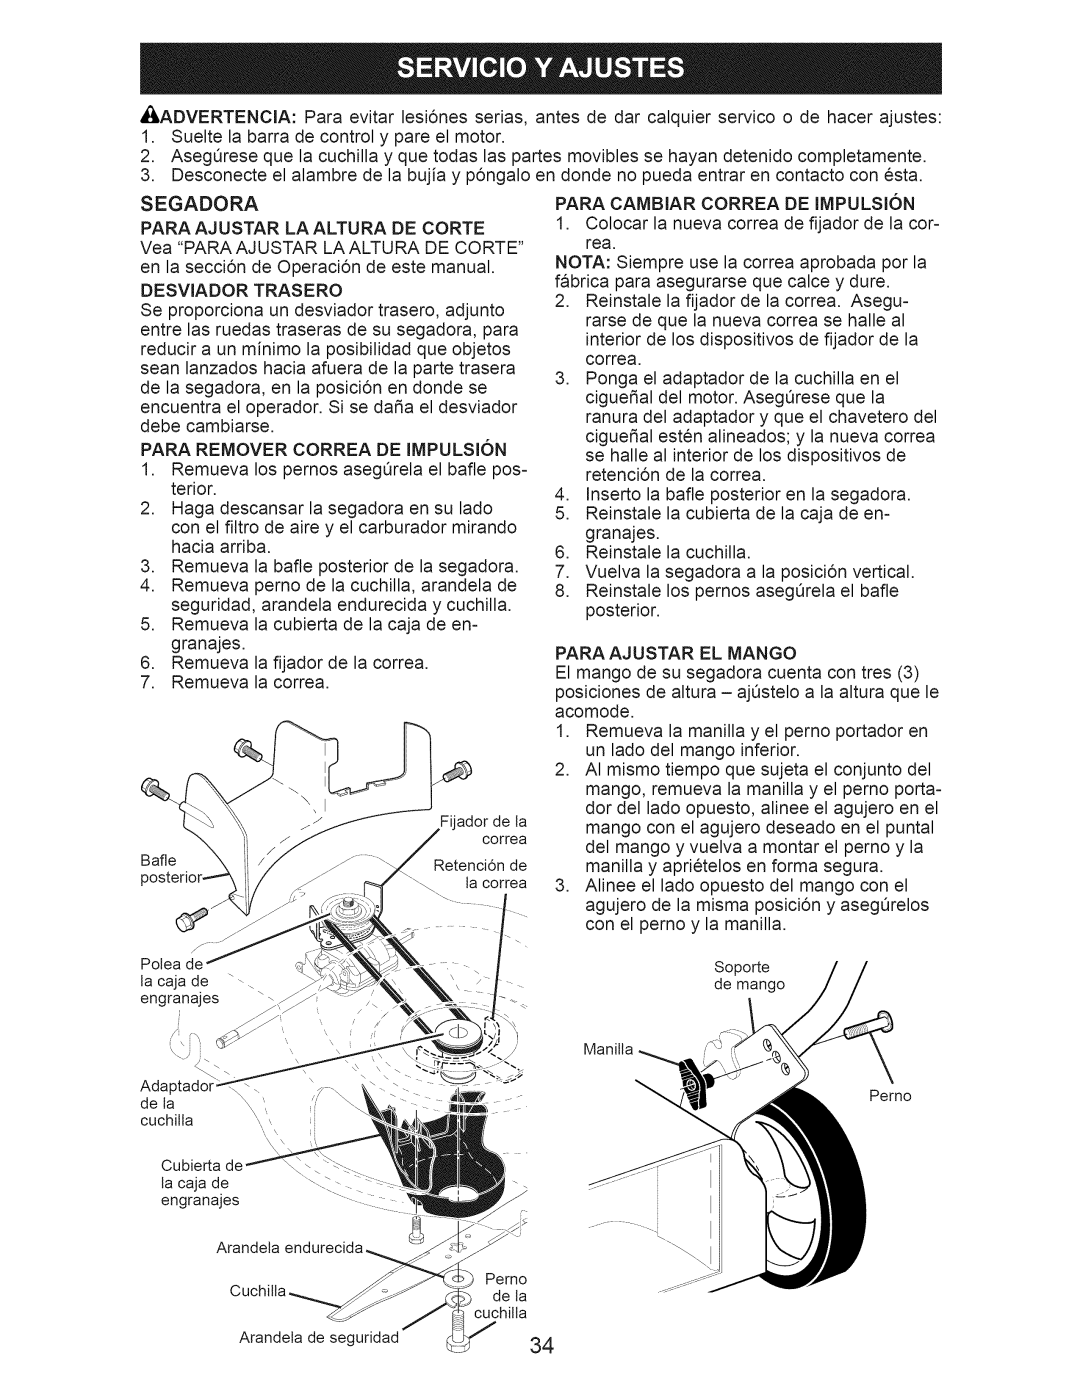 Craftsman 917.374352 owner manual Segadora, LA Altura DE Corte, Desviador Trasero, Para Remover Correa DE Impulsion 